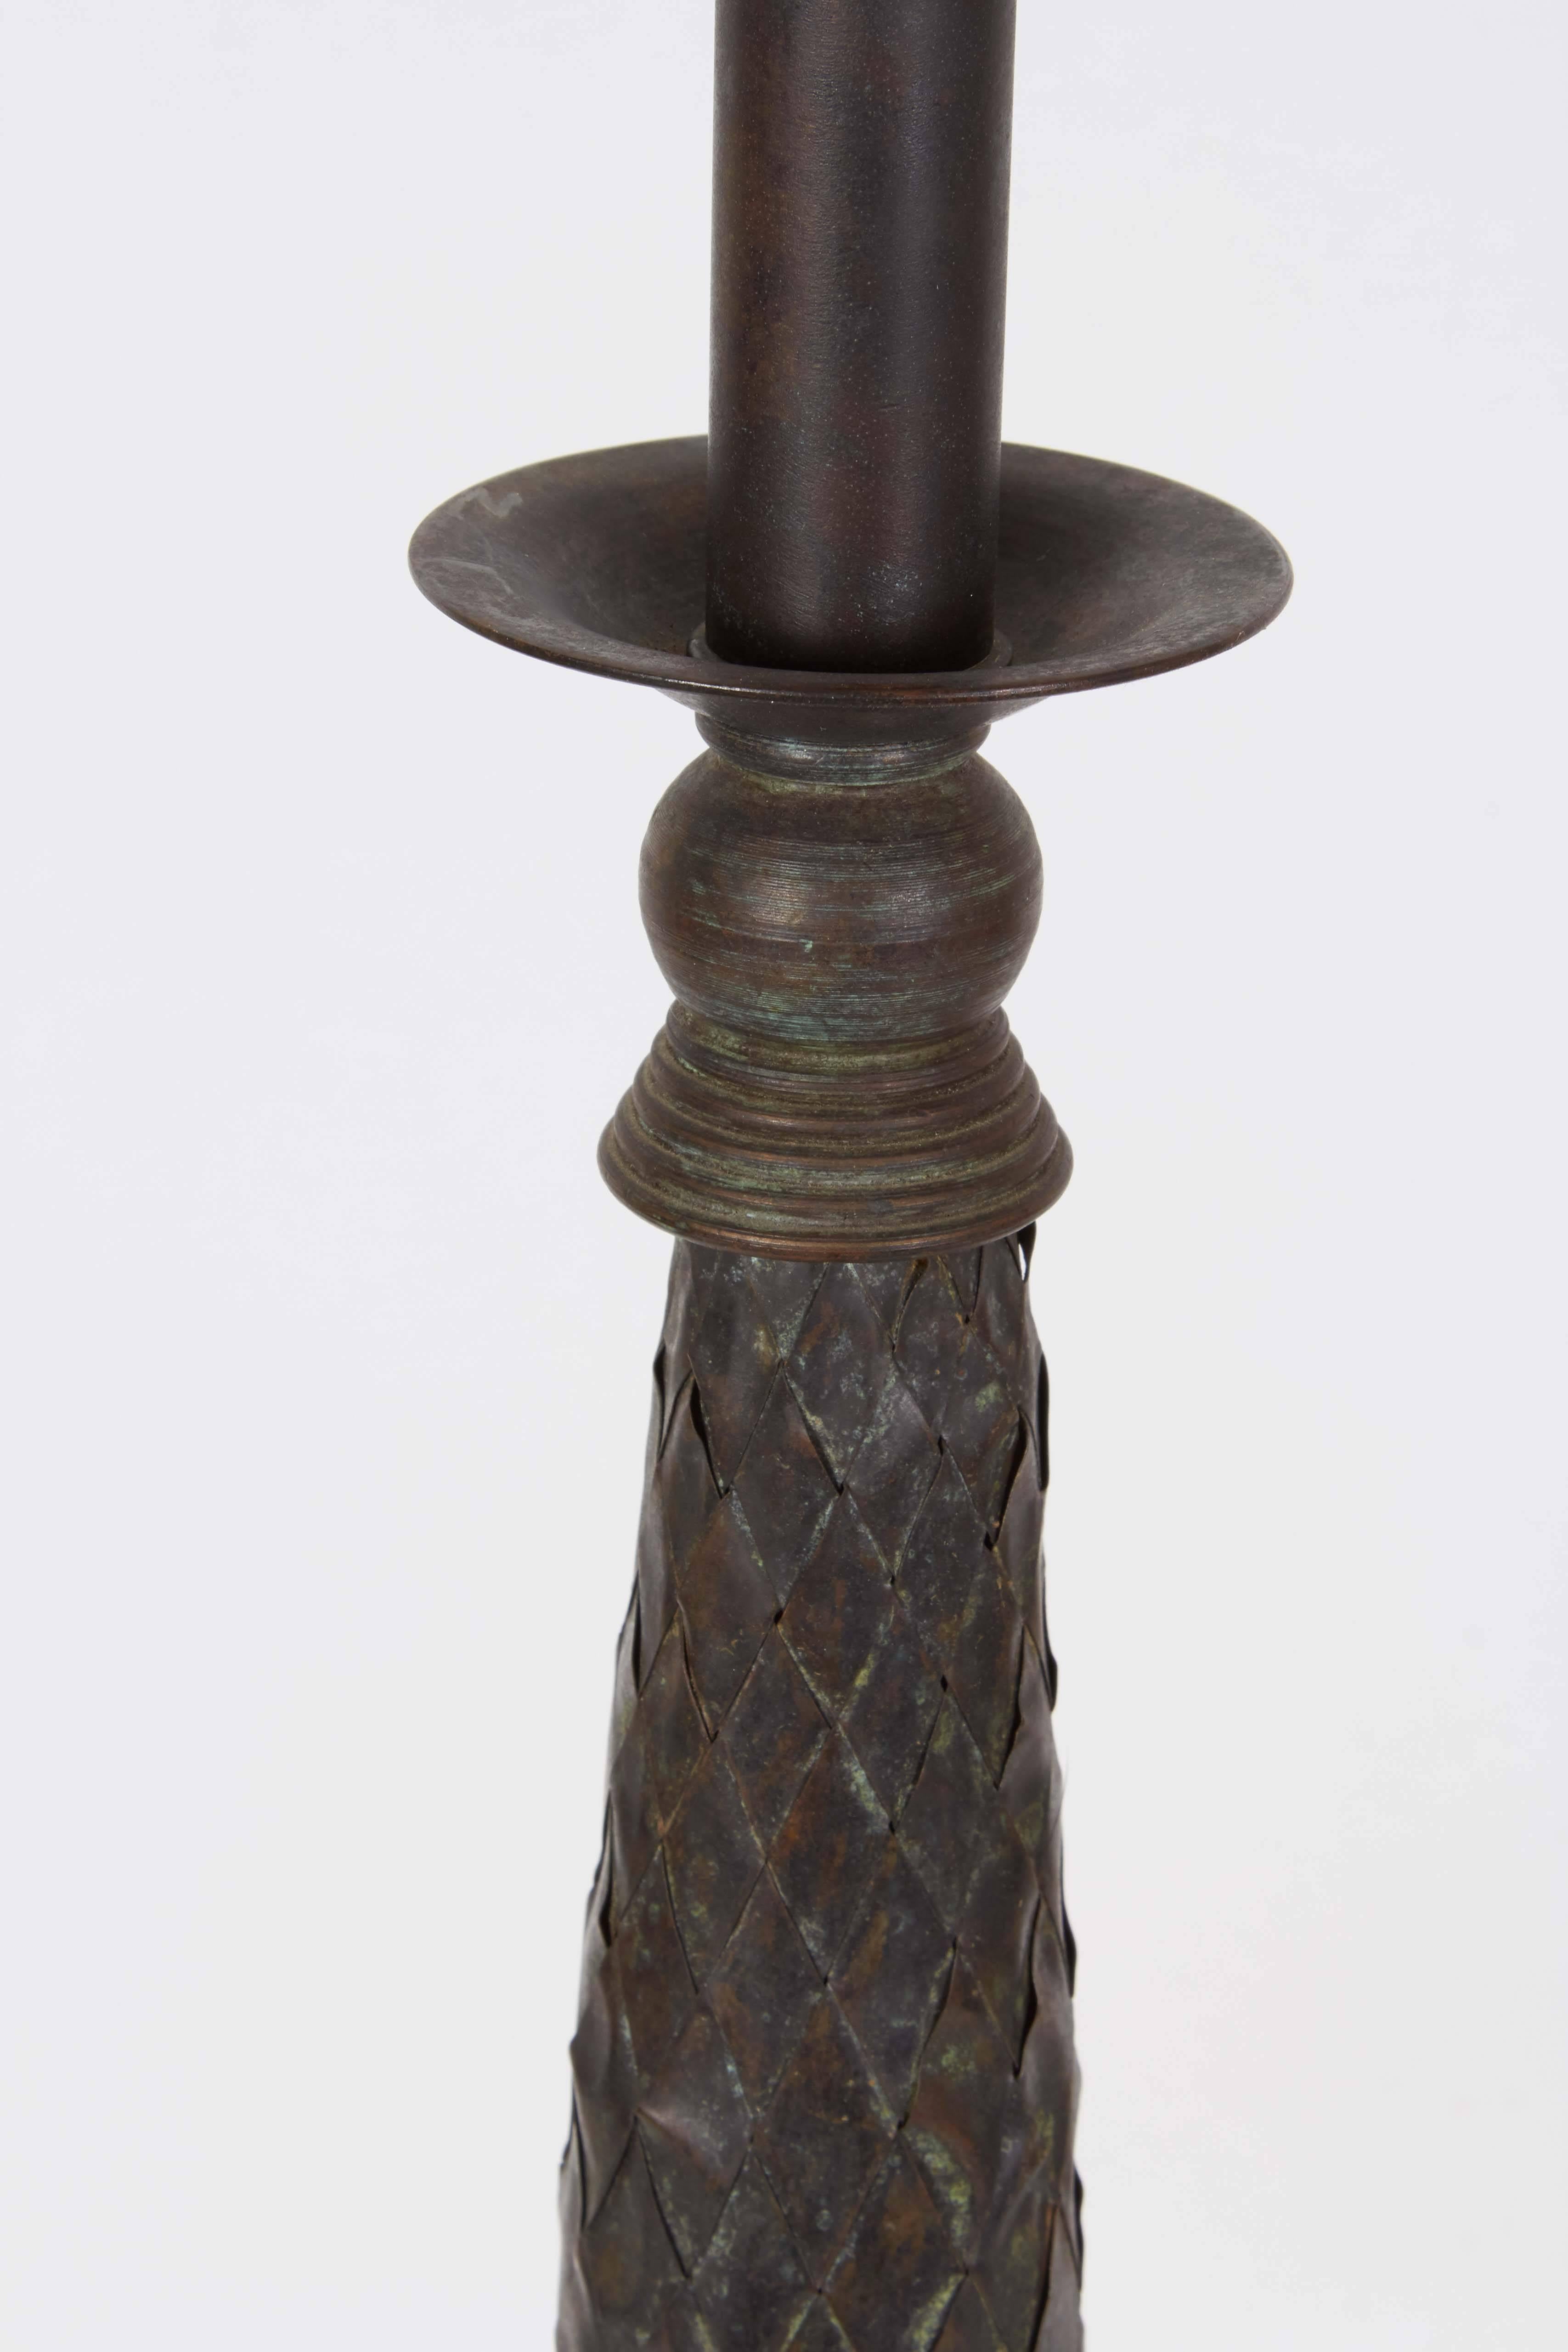 Une paire de lampes de table chandeliers vintage, fabriquées par Maitland-Smith, chacune en cuivre patiné, avec des tiges effilées tissées et des motifs décoratifs en forme de boules. Très bon état, usure conforme à l'âge et à l'utilisation.

10974